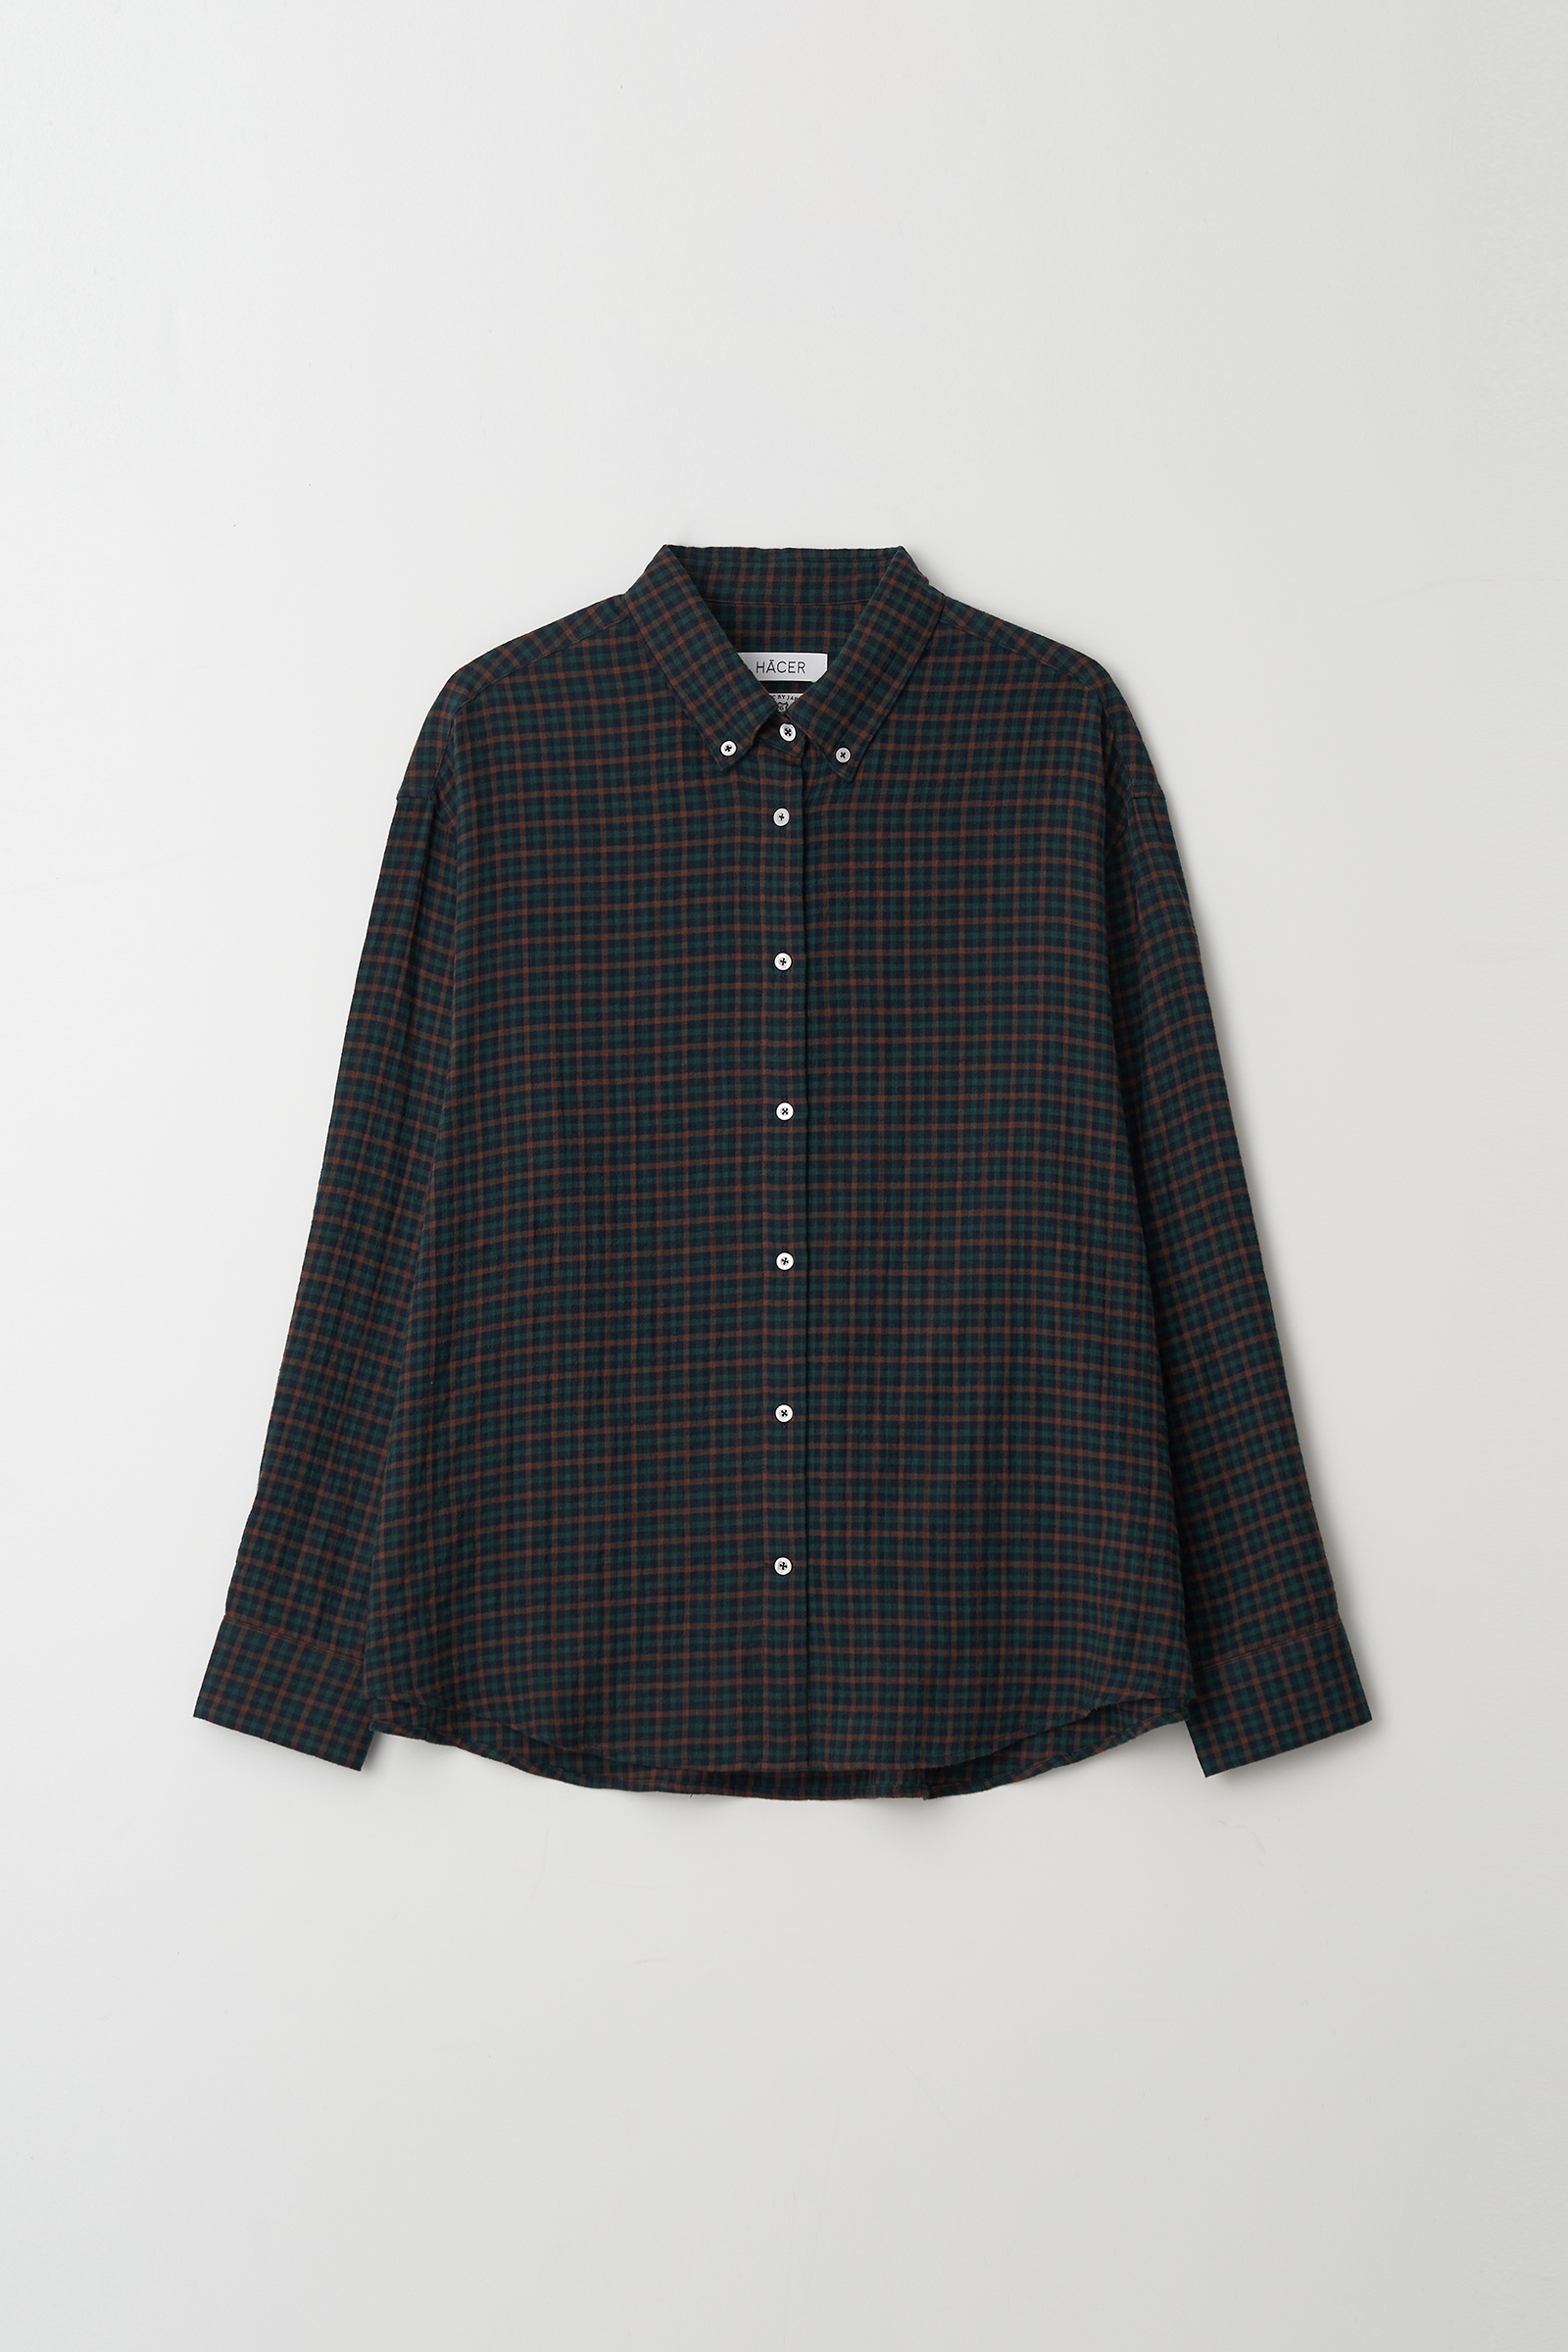 Check Shirt (Fabric by Kuwamura)